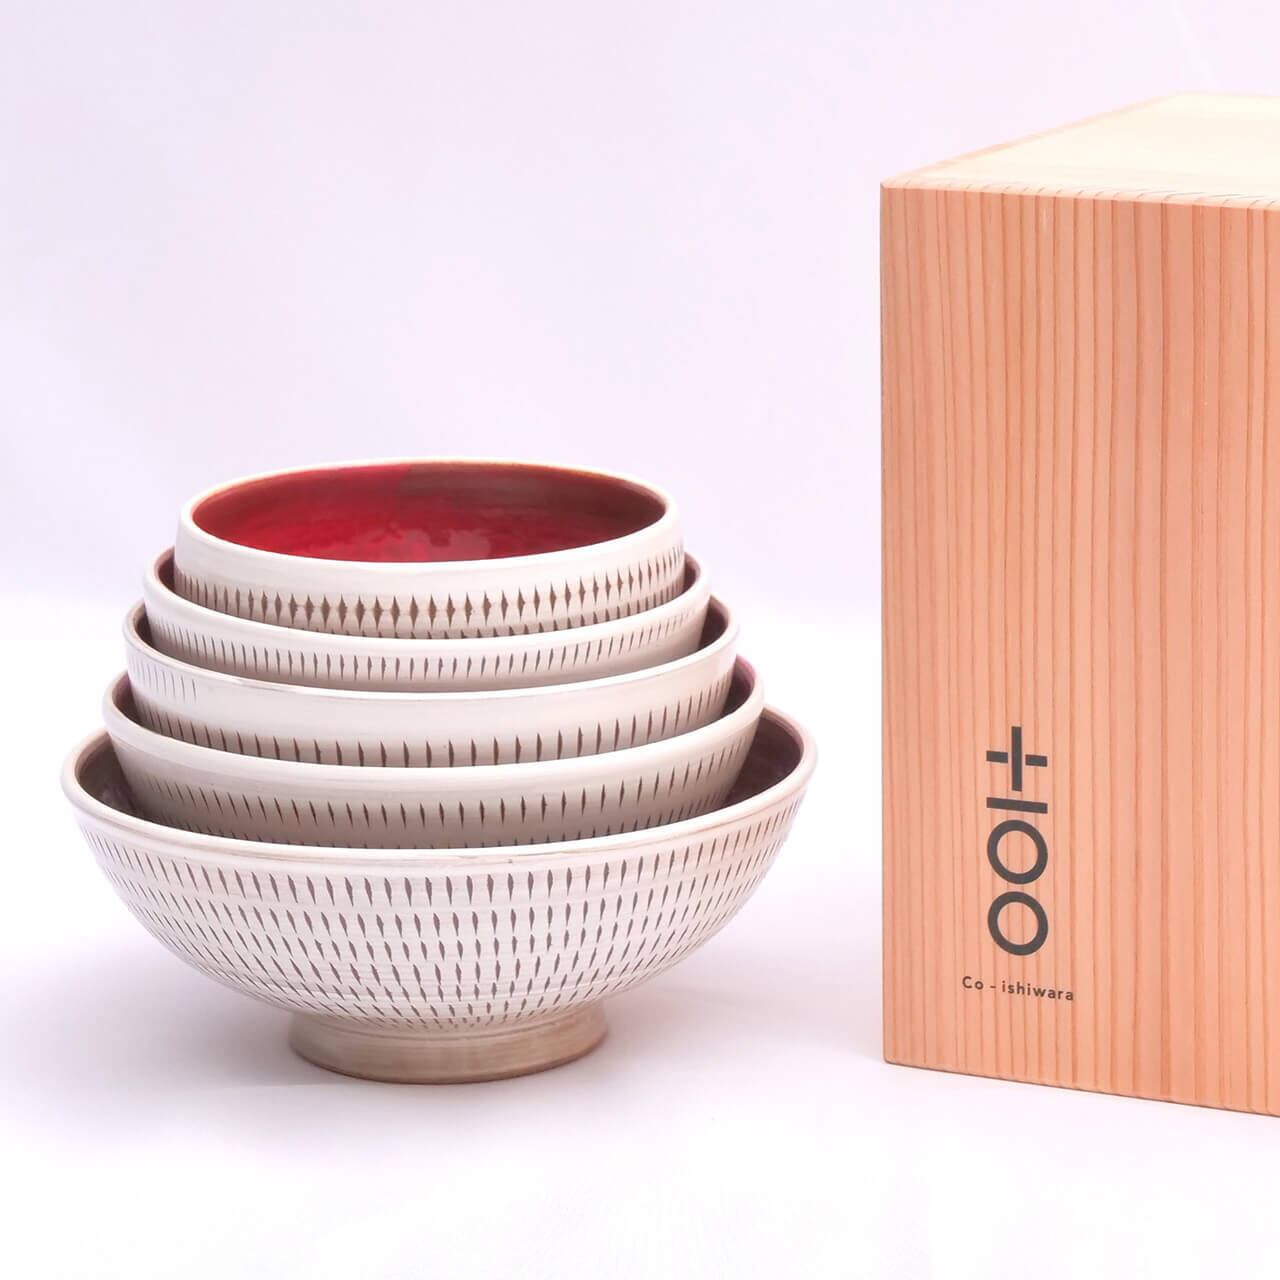 Co-ishiwara 百碗 白飛鉋紅彩 マルワ窯 CHW-2 小石原焼 ご飯茶碗 プロジェクトブランド